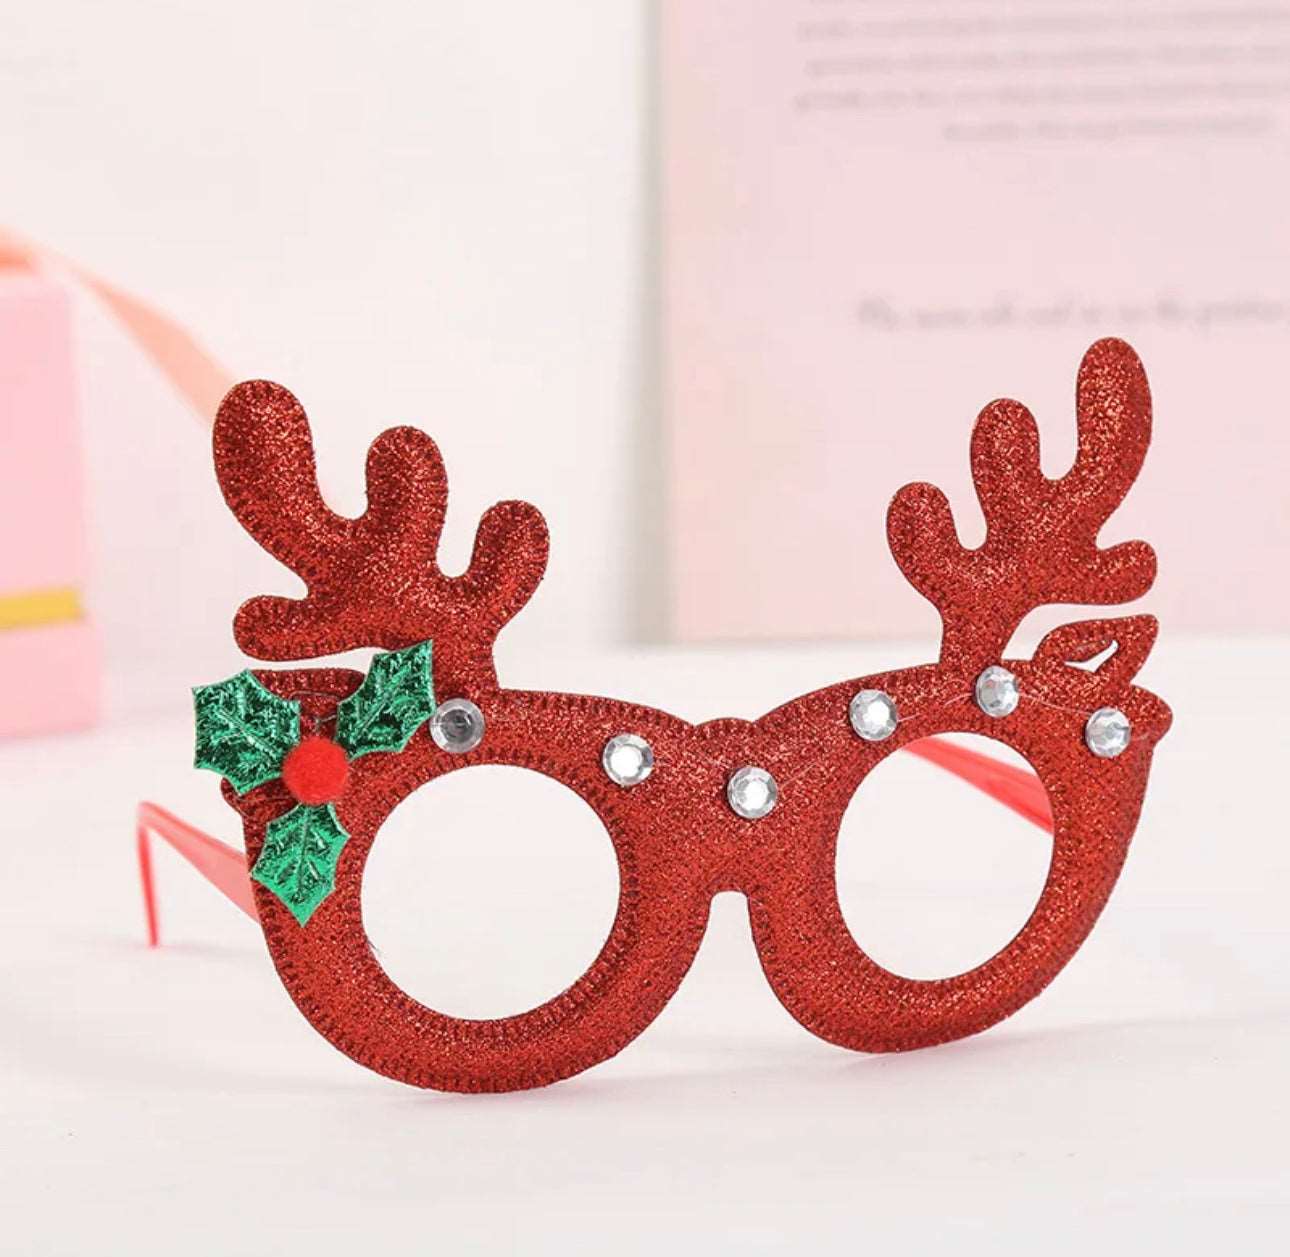 Novelty Christmas Glasses